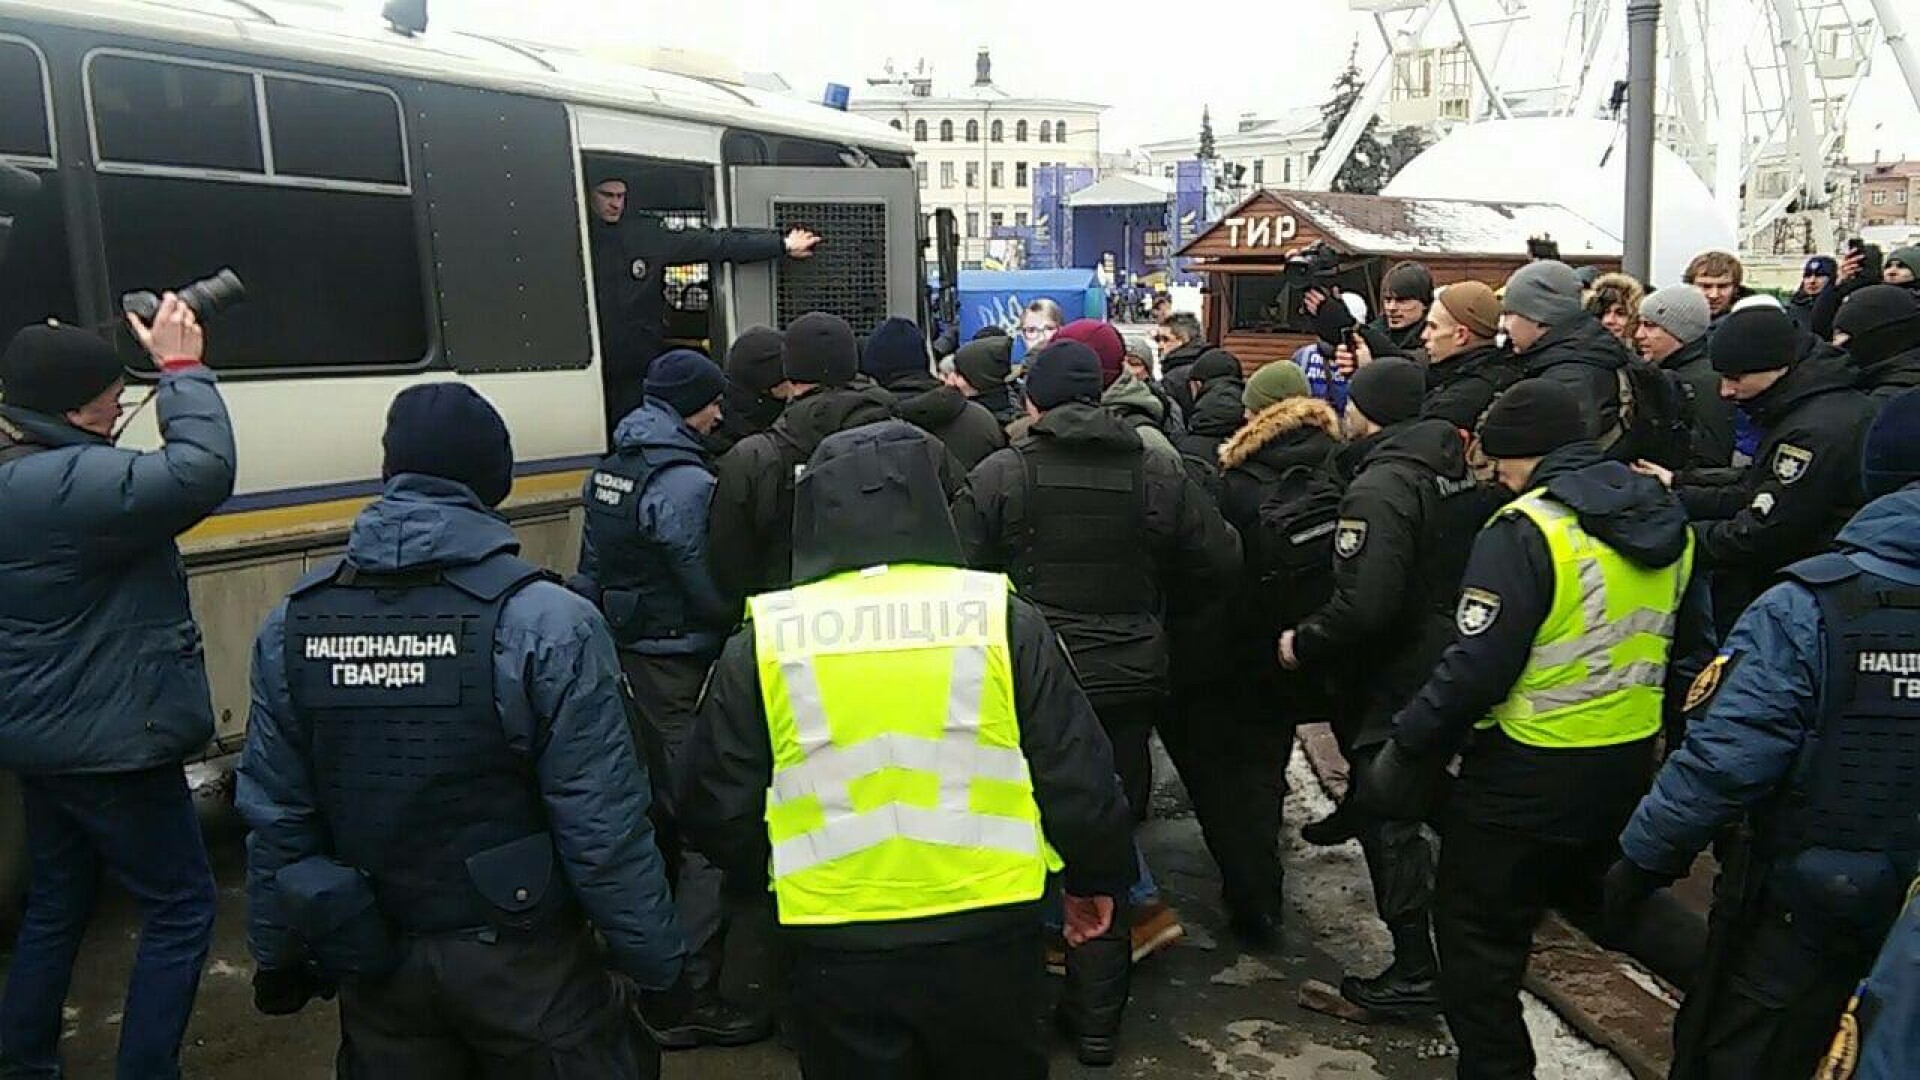 sectei de politie luata cu aslat in Kiev